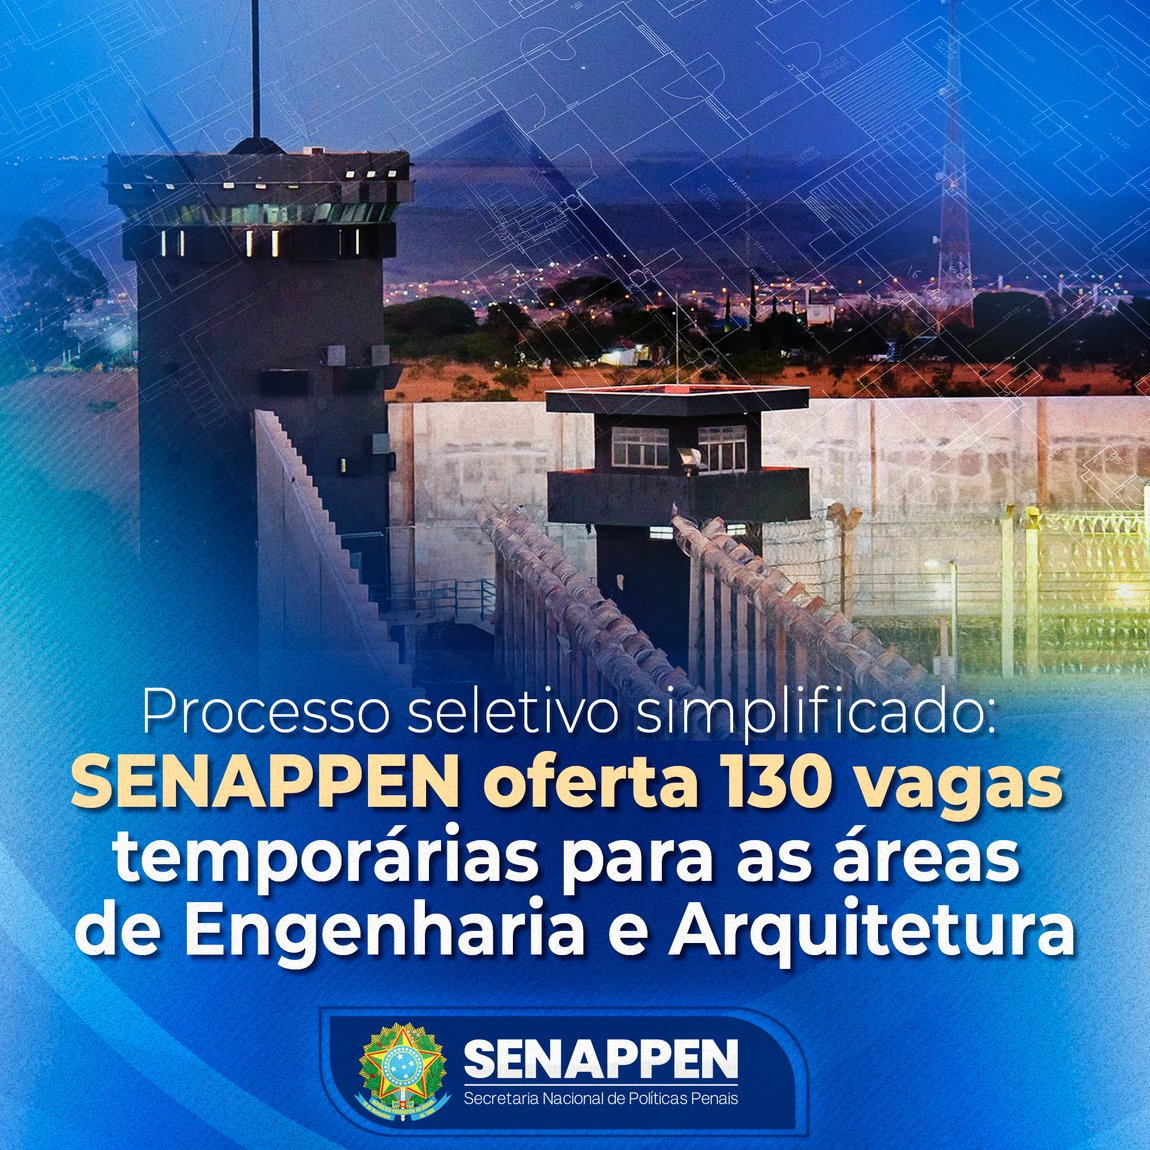 SENAPPEN abre 130 vagas temporárias para as áreas de engenharia e arquitetura